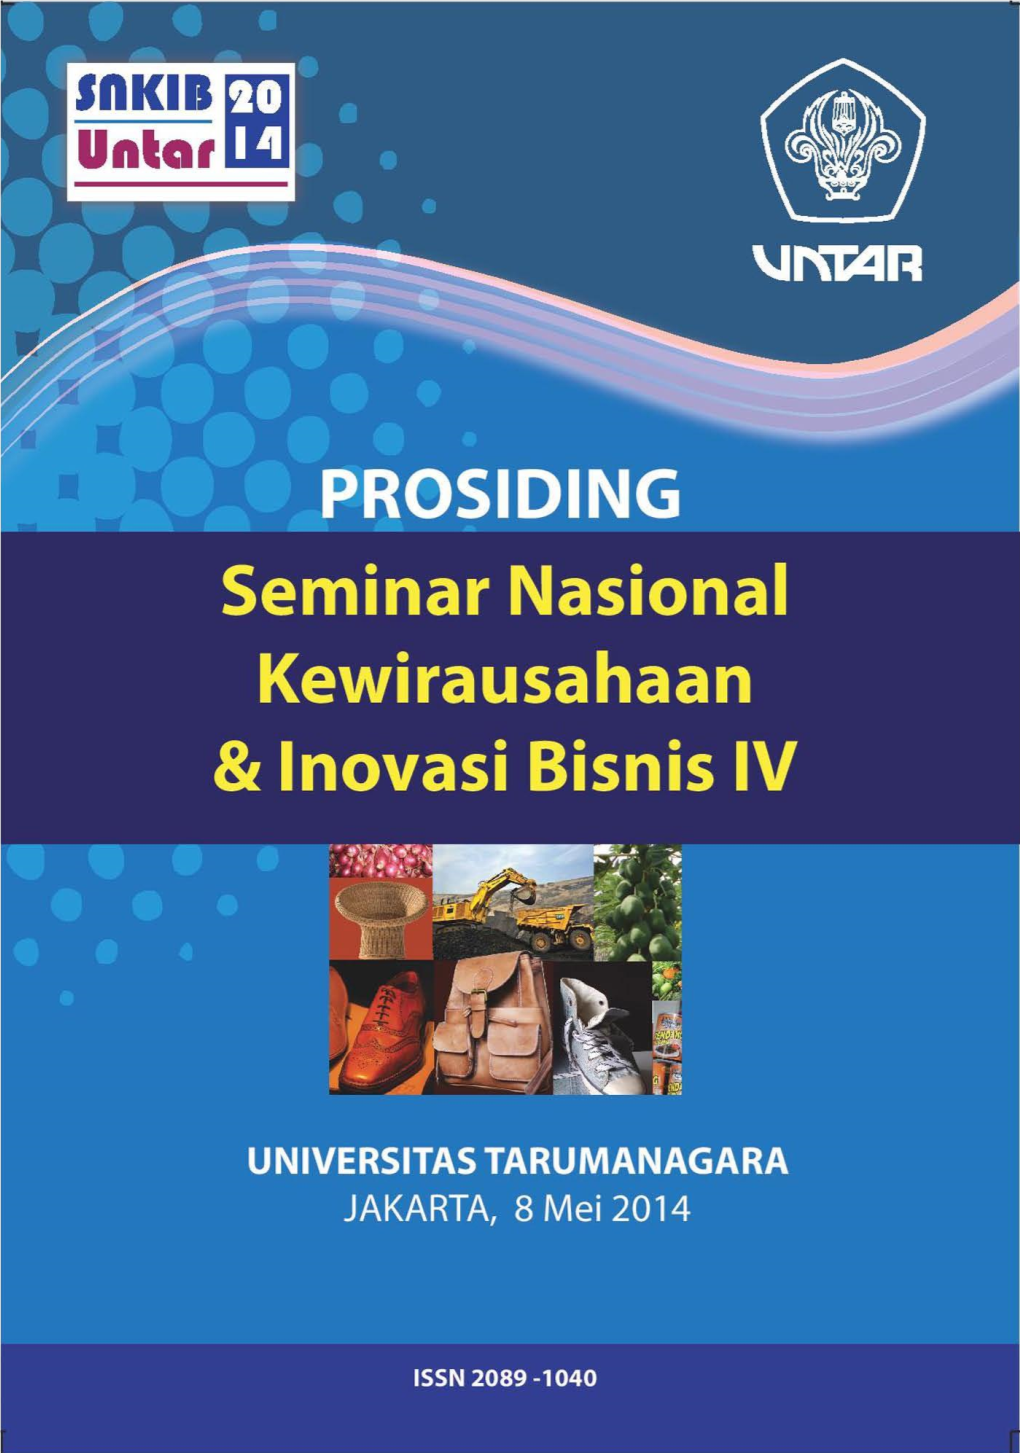 Seminar Nasional Kewirausahaan Dan Inovasi Bisnis IV 2014 Universitas Tarumanagara Jakarta, 8 Mei 2014 ISSN NO: 2089-1040